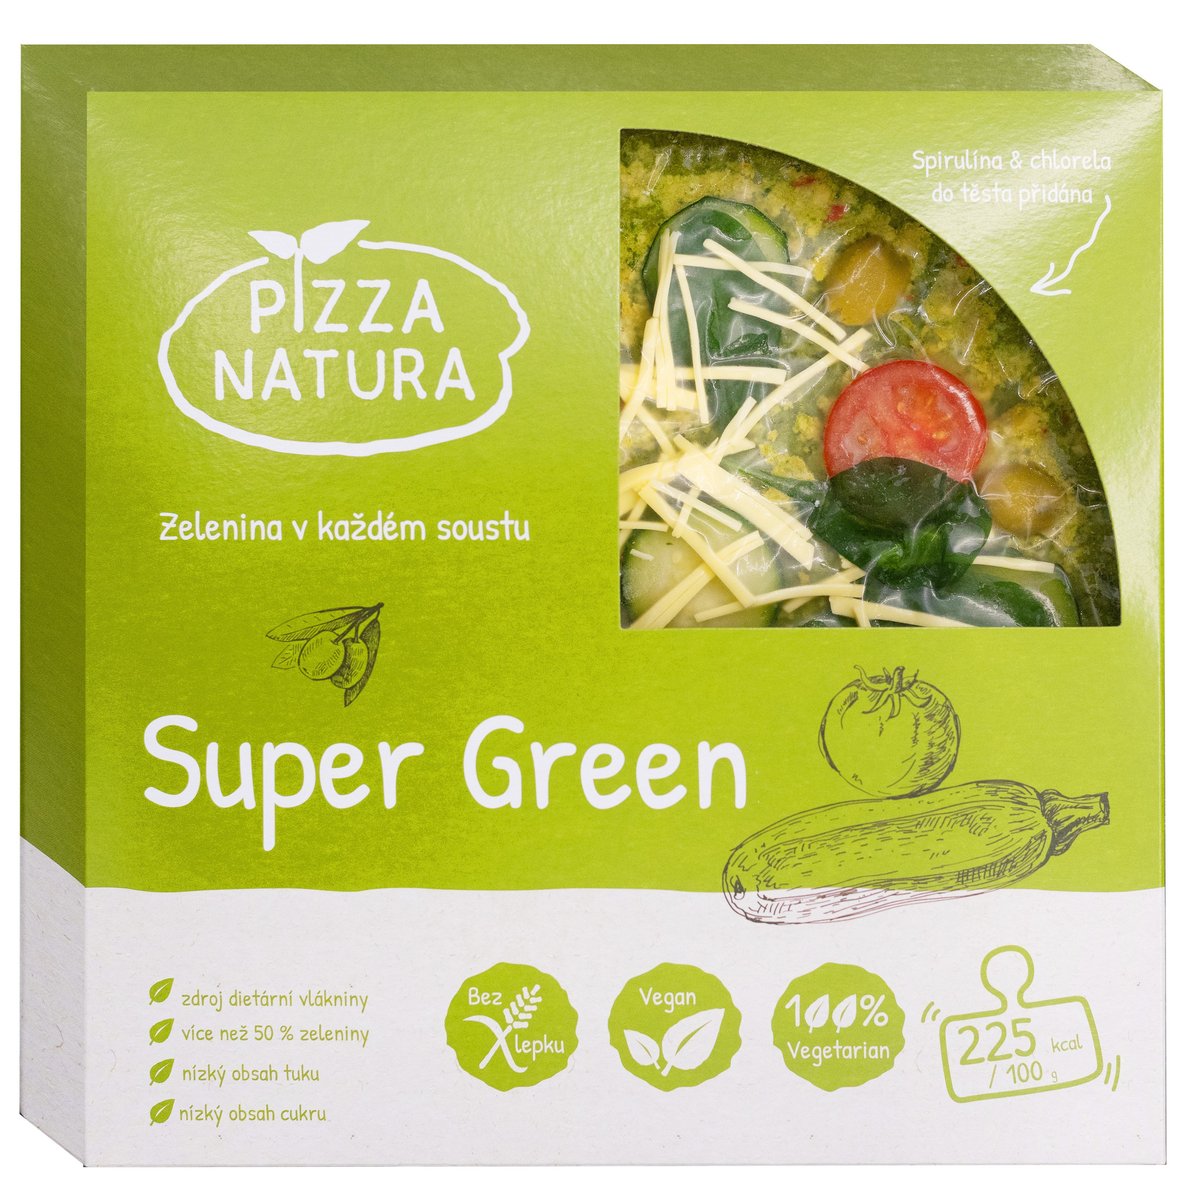 Pizza Natura Super Green veganská pizza z originálního zeleninového těsta